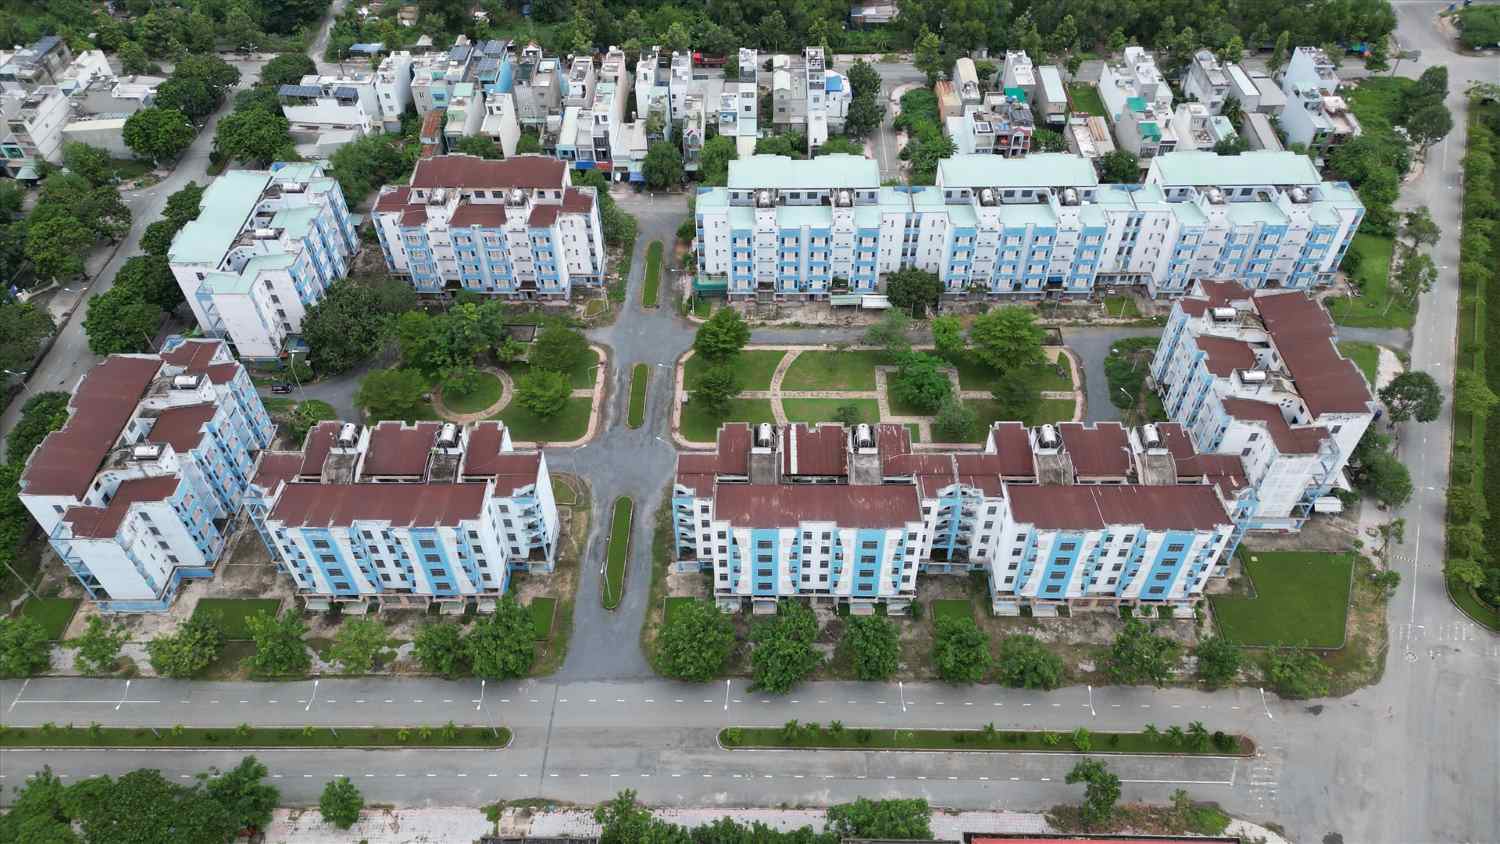  Khu tái định cư tọa lạc tại huyện Bình Chánh được xây dựng với tổng kinh phí hơn 1.000 tỉ đồng, dành để bố trí tái định cư cho các hộ dân bị giải phóng mặt bằng tại các dự án trên địa bàn thành phố từ năm 2012.